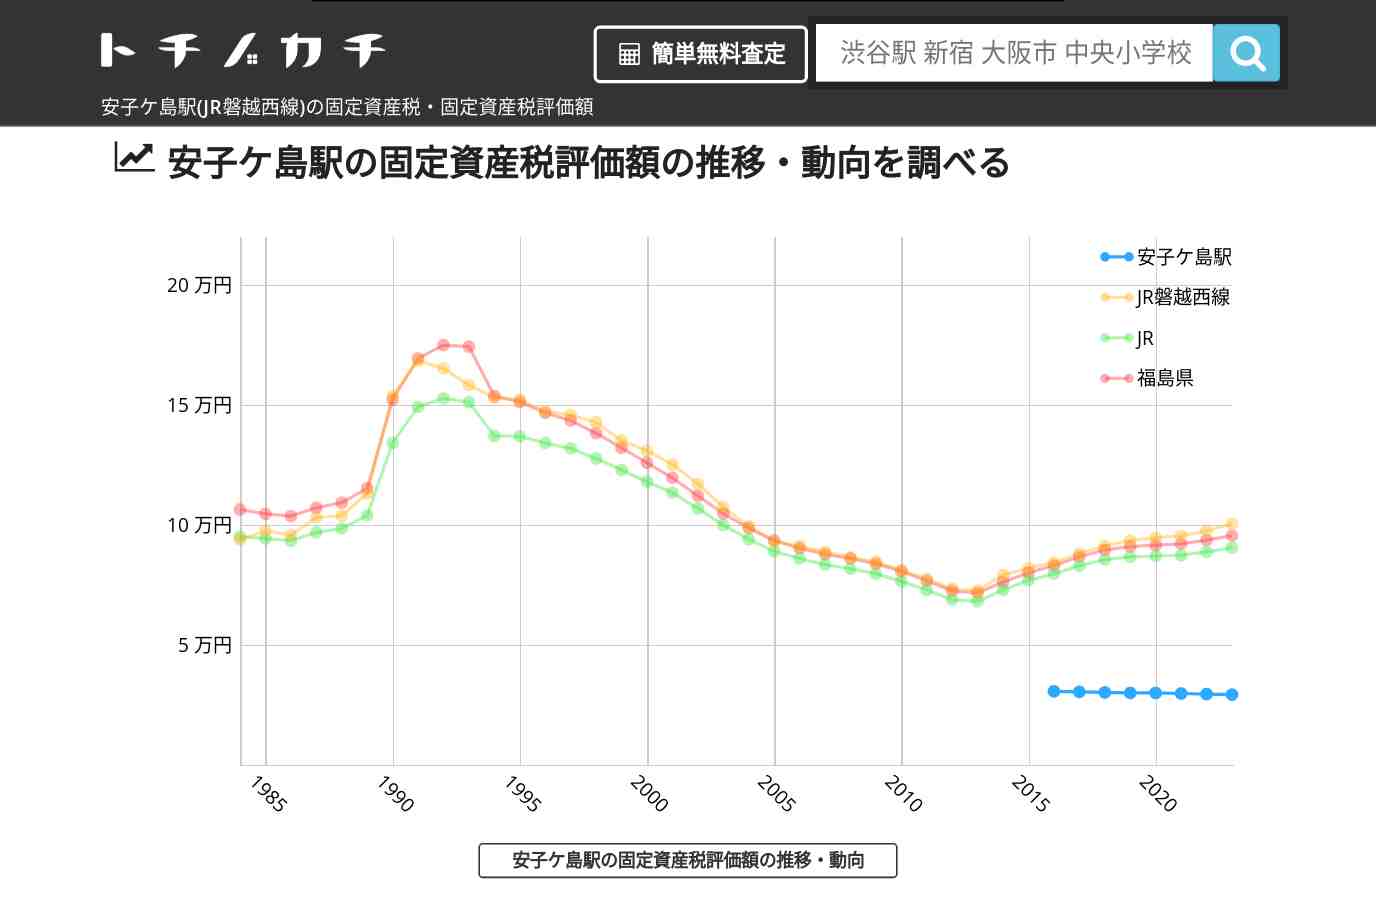 安子ケ島駅(JR磐越西線)の固定資産税・固定資産税評価額 | トチノカチ